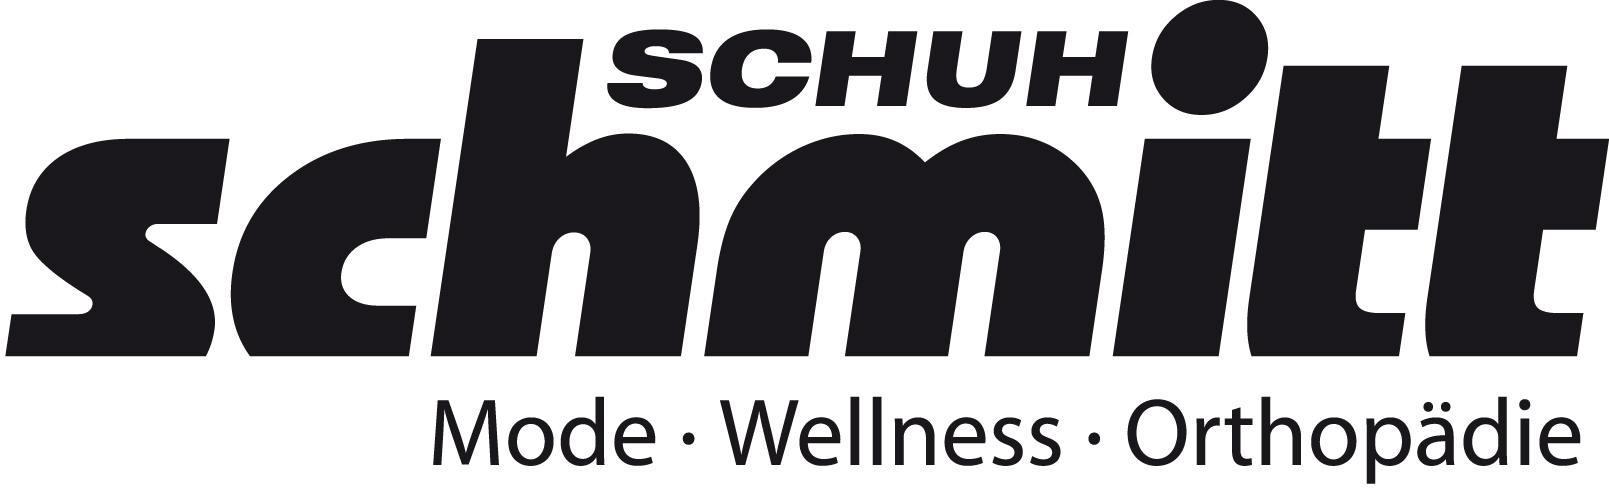 Schuh-Schmitt